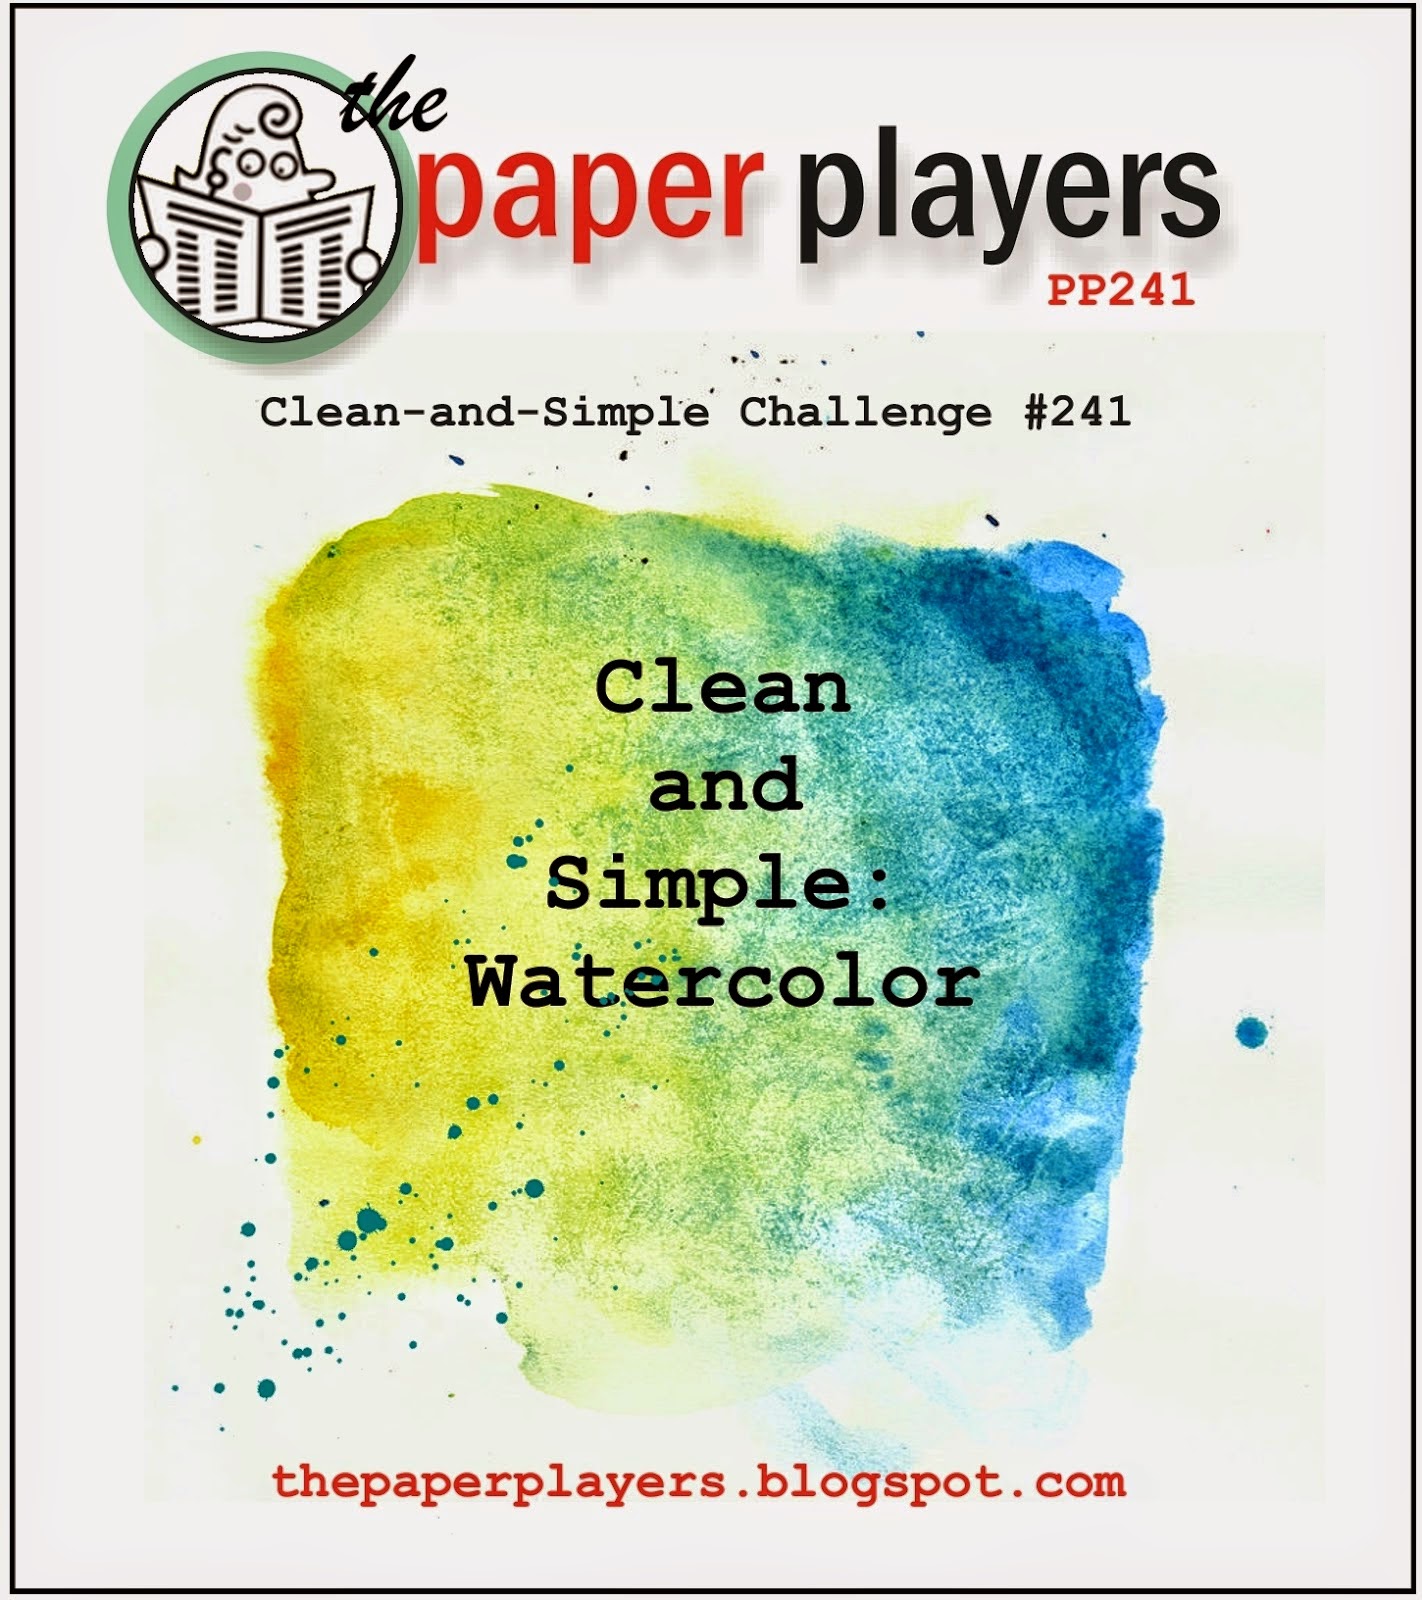 Simple clean. Paper plays